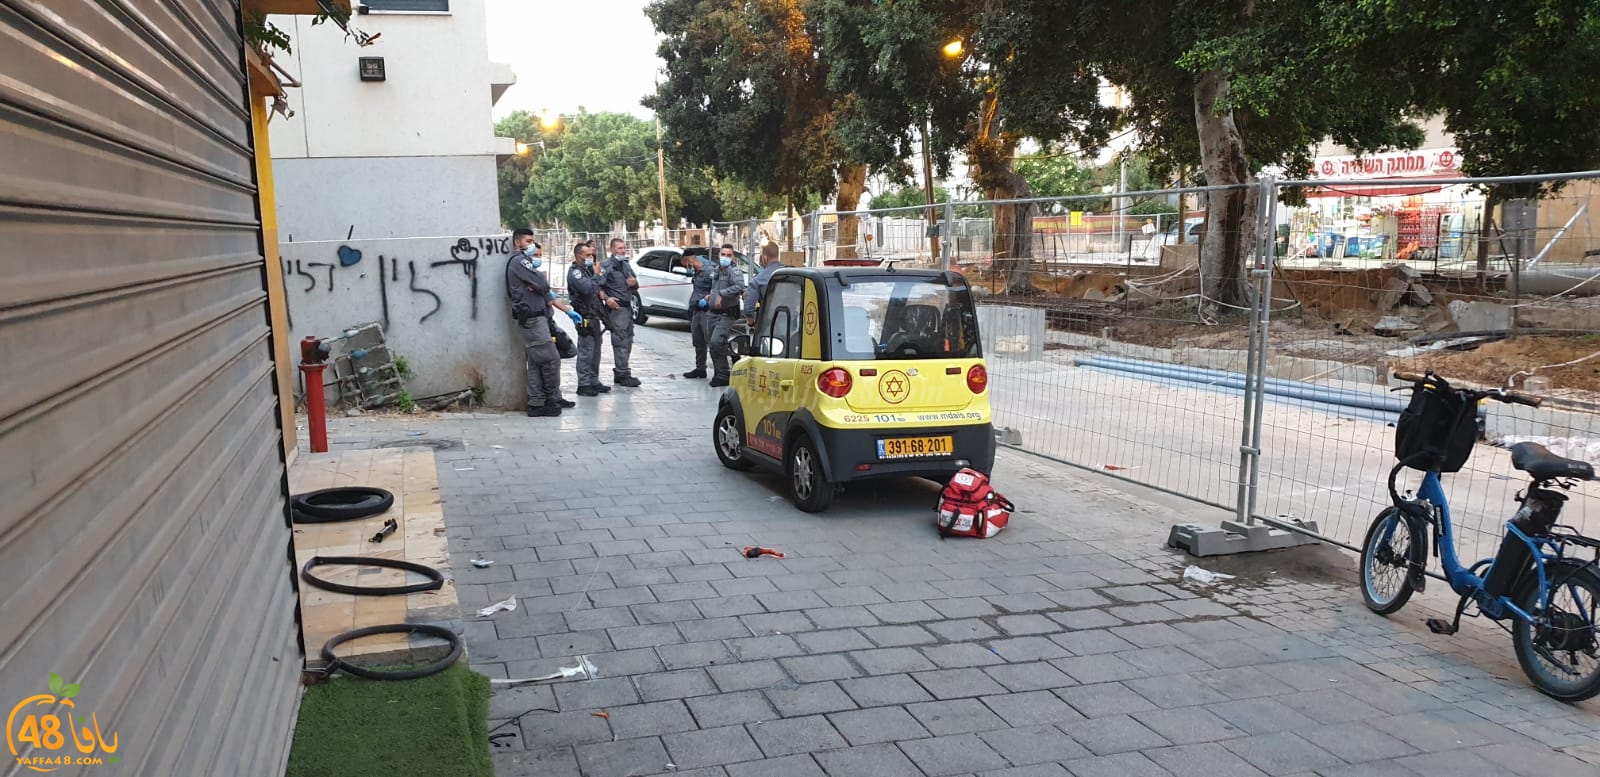 يافا: إصابة طفيفة لشاب في حادث إطلاق نار بالمدينة